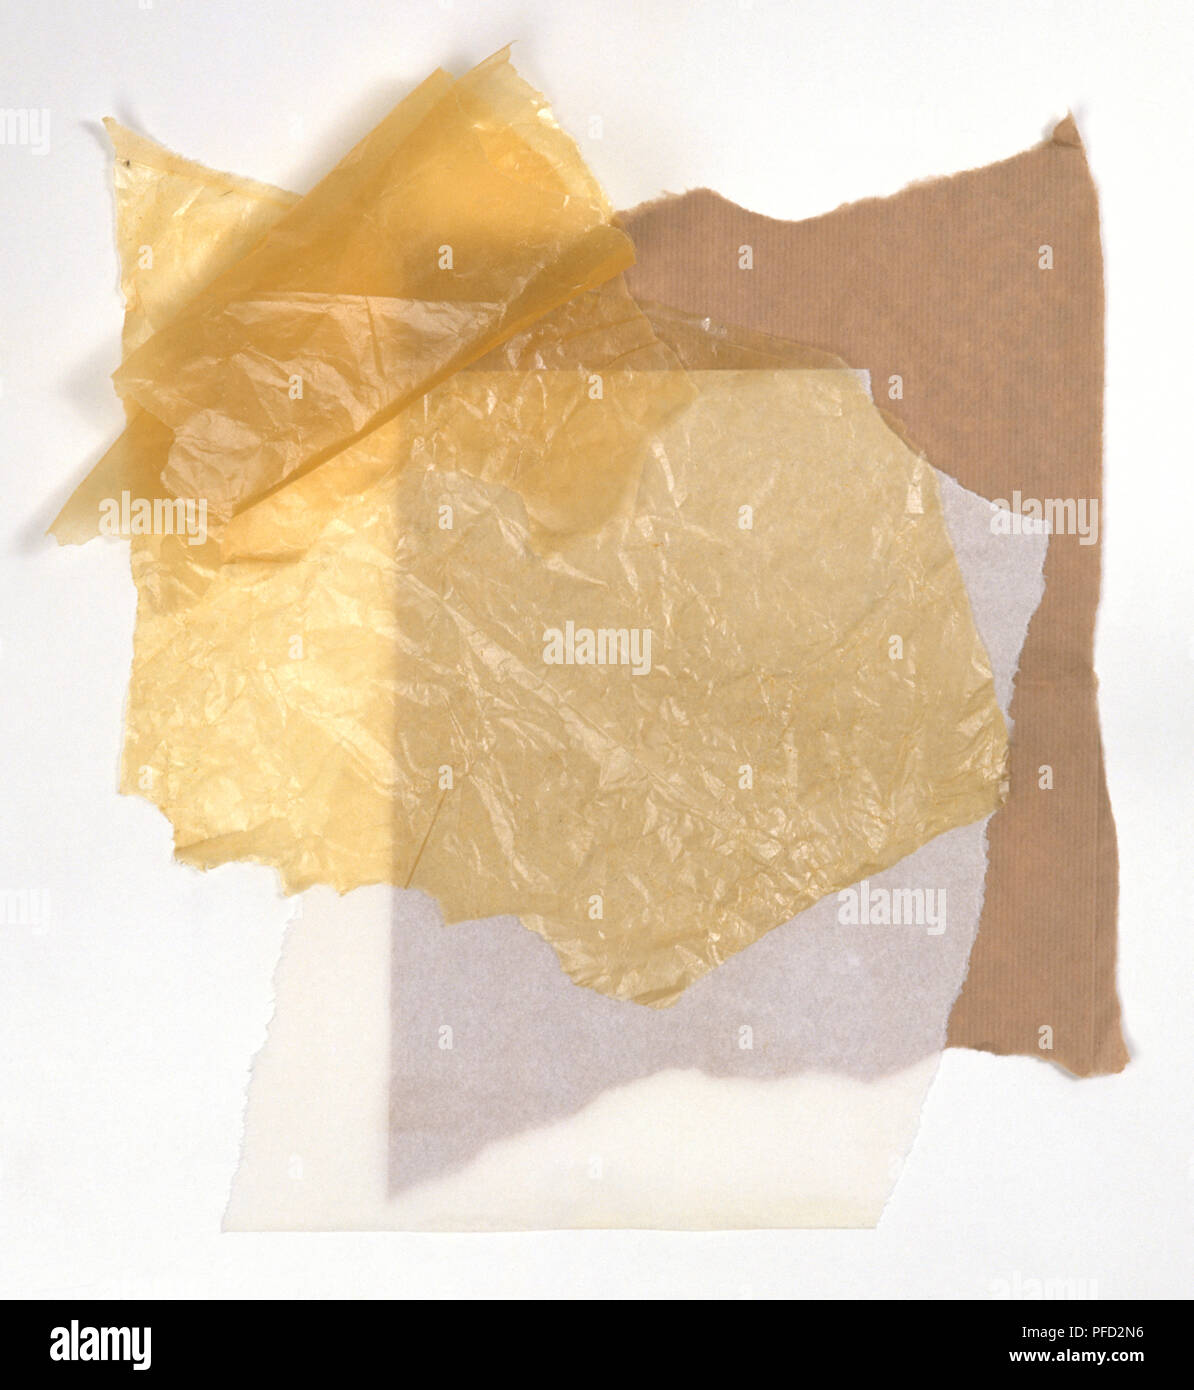 Verschiedene Arten von Papier, einschließlich Gewebe Papiere und braunes  Papier Stockfotografie - Alamy